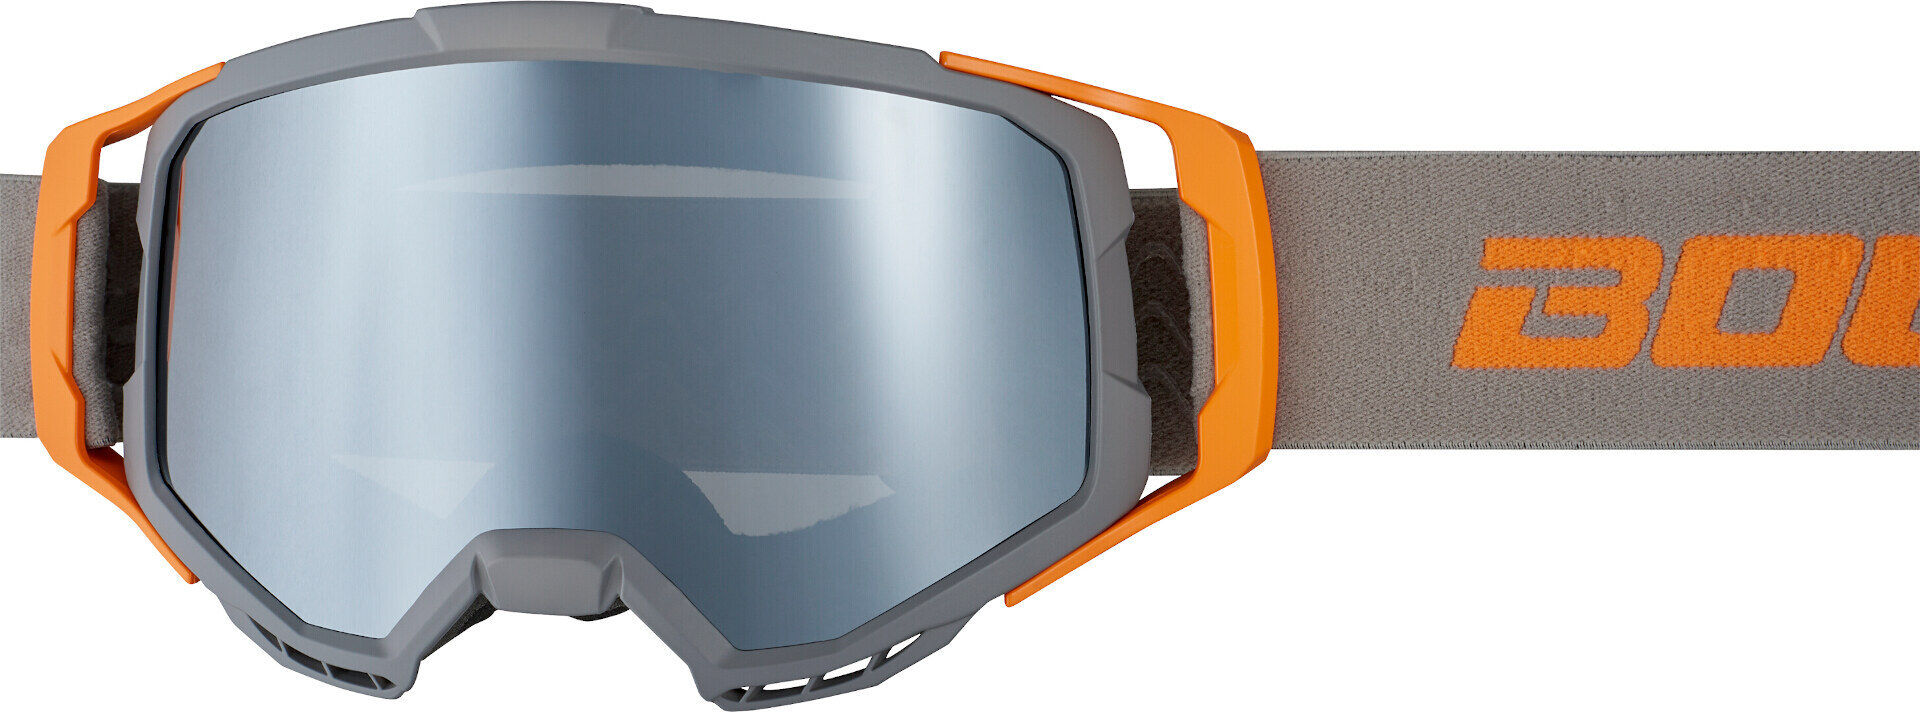 Bogotto B-1 Gafas de motocross - Gris Naranja (un tamaño)